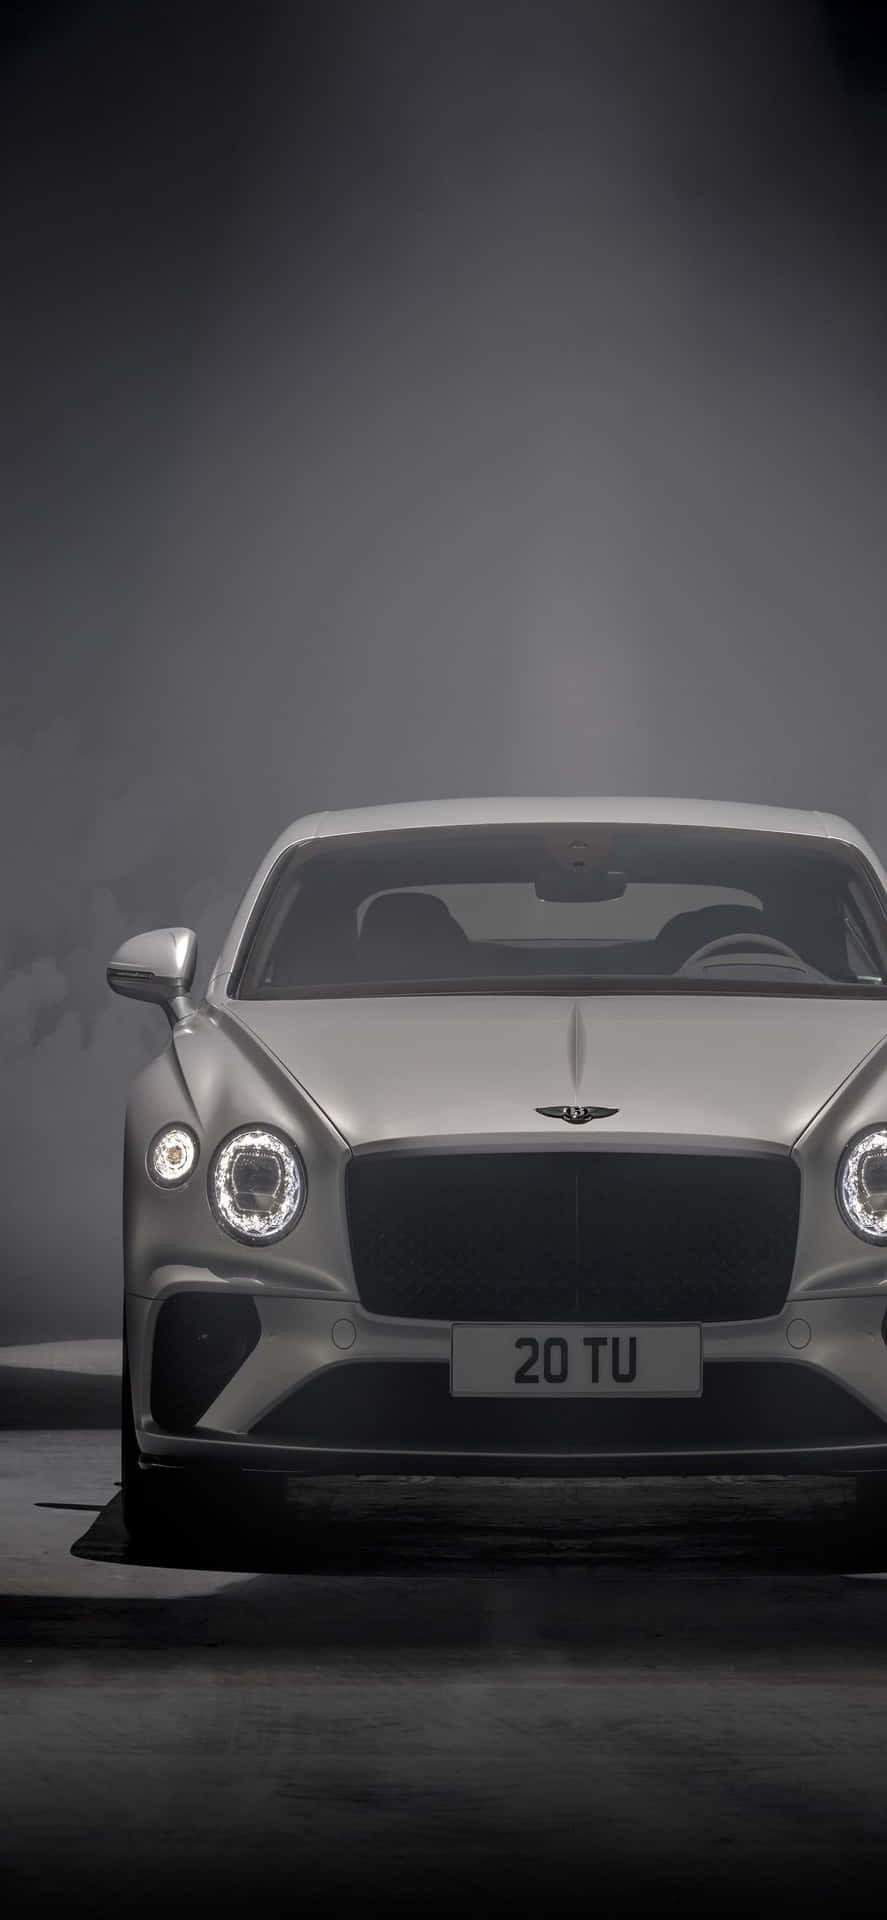 Eintauchenin Den Luxus: Ein Iphone Xs Max In Einem Bentley.